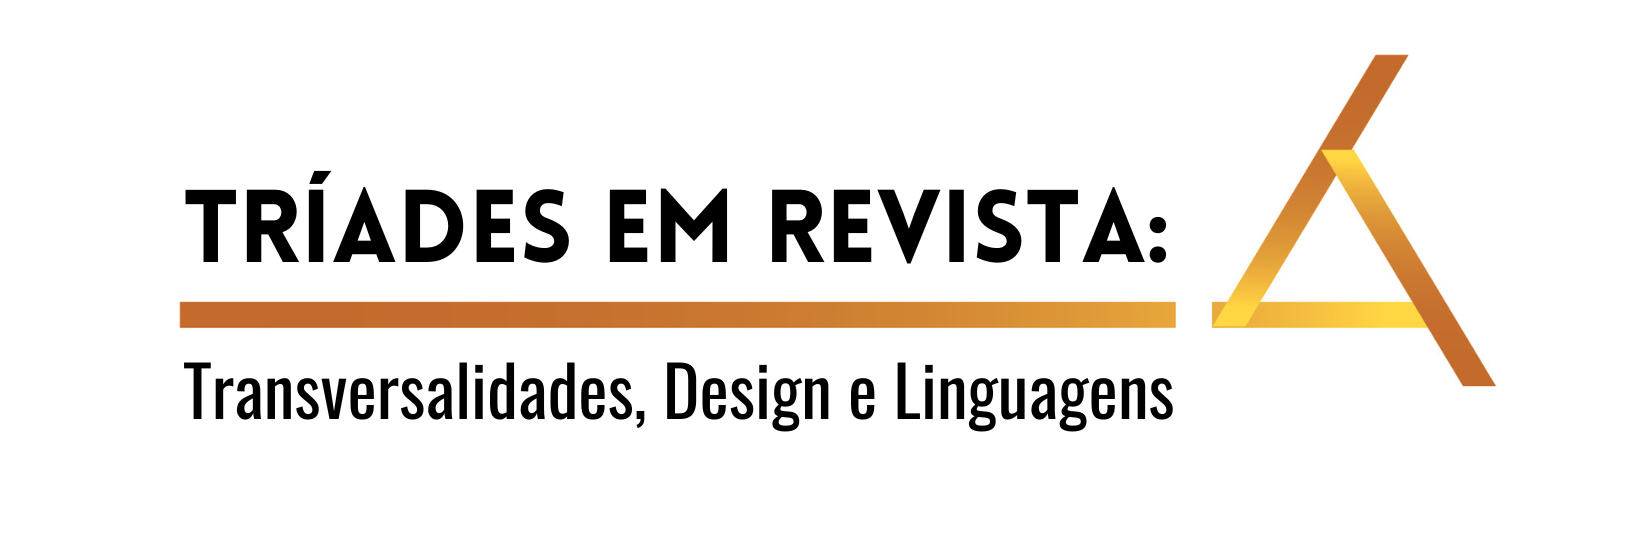 Logomarca da revista: Tríades em Revista: Transversalidades, Design e Linguagens